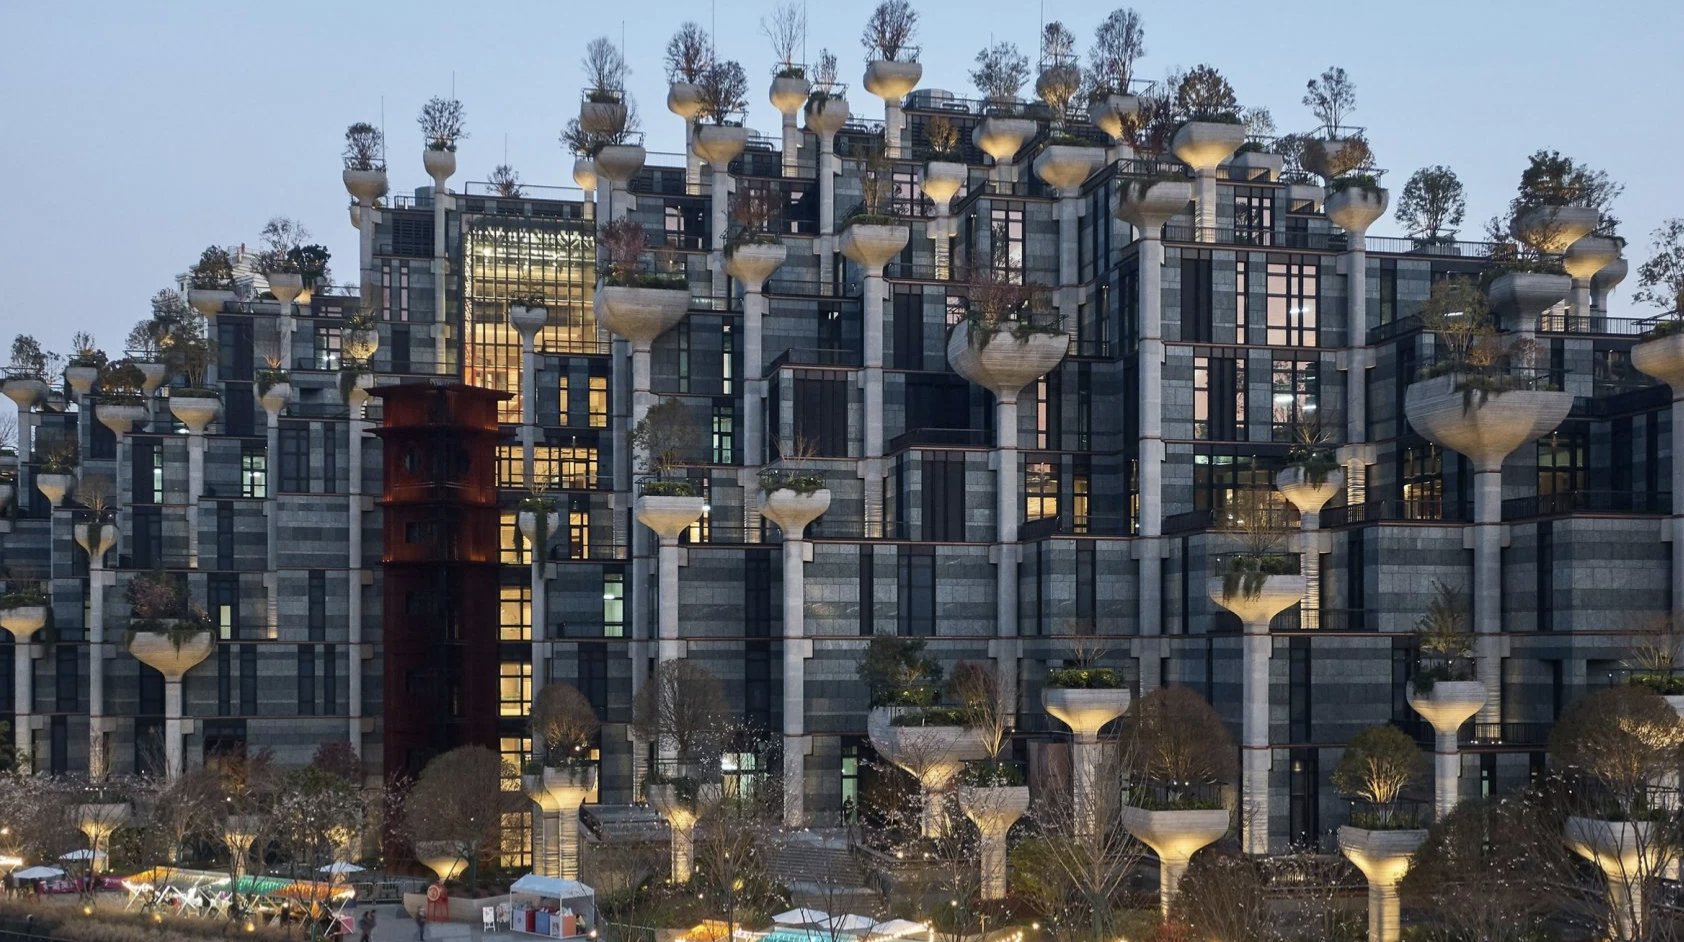 Χίλια δέντρα σε ουρανοξύστη – Σαγκάη: Εικόνες που θυμίζουν τους «κρεμαστούς κήπους της Βαβυλώνας»